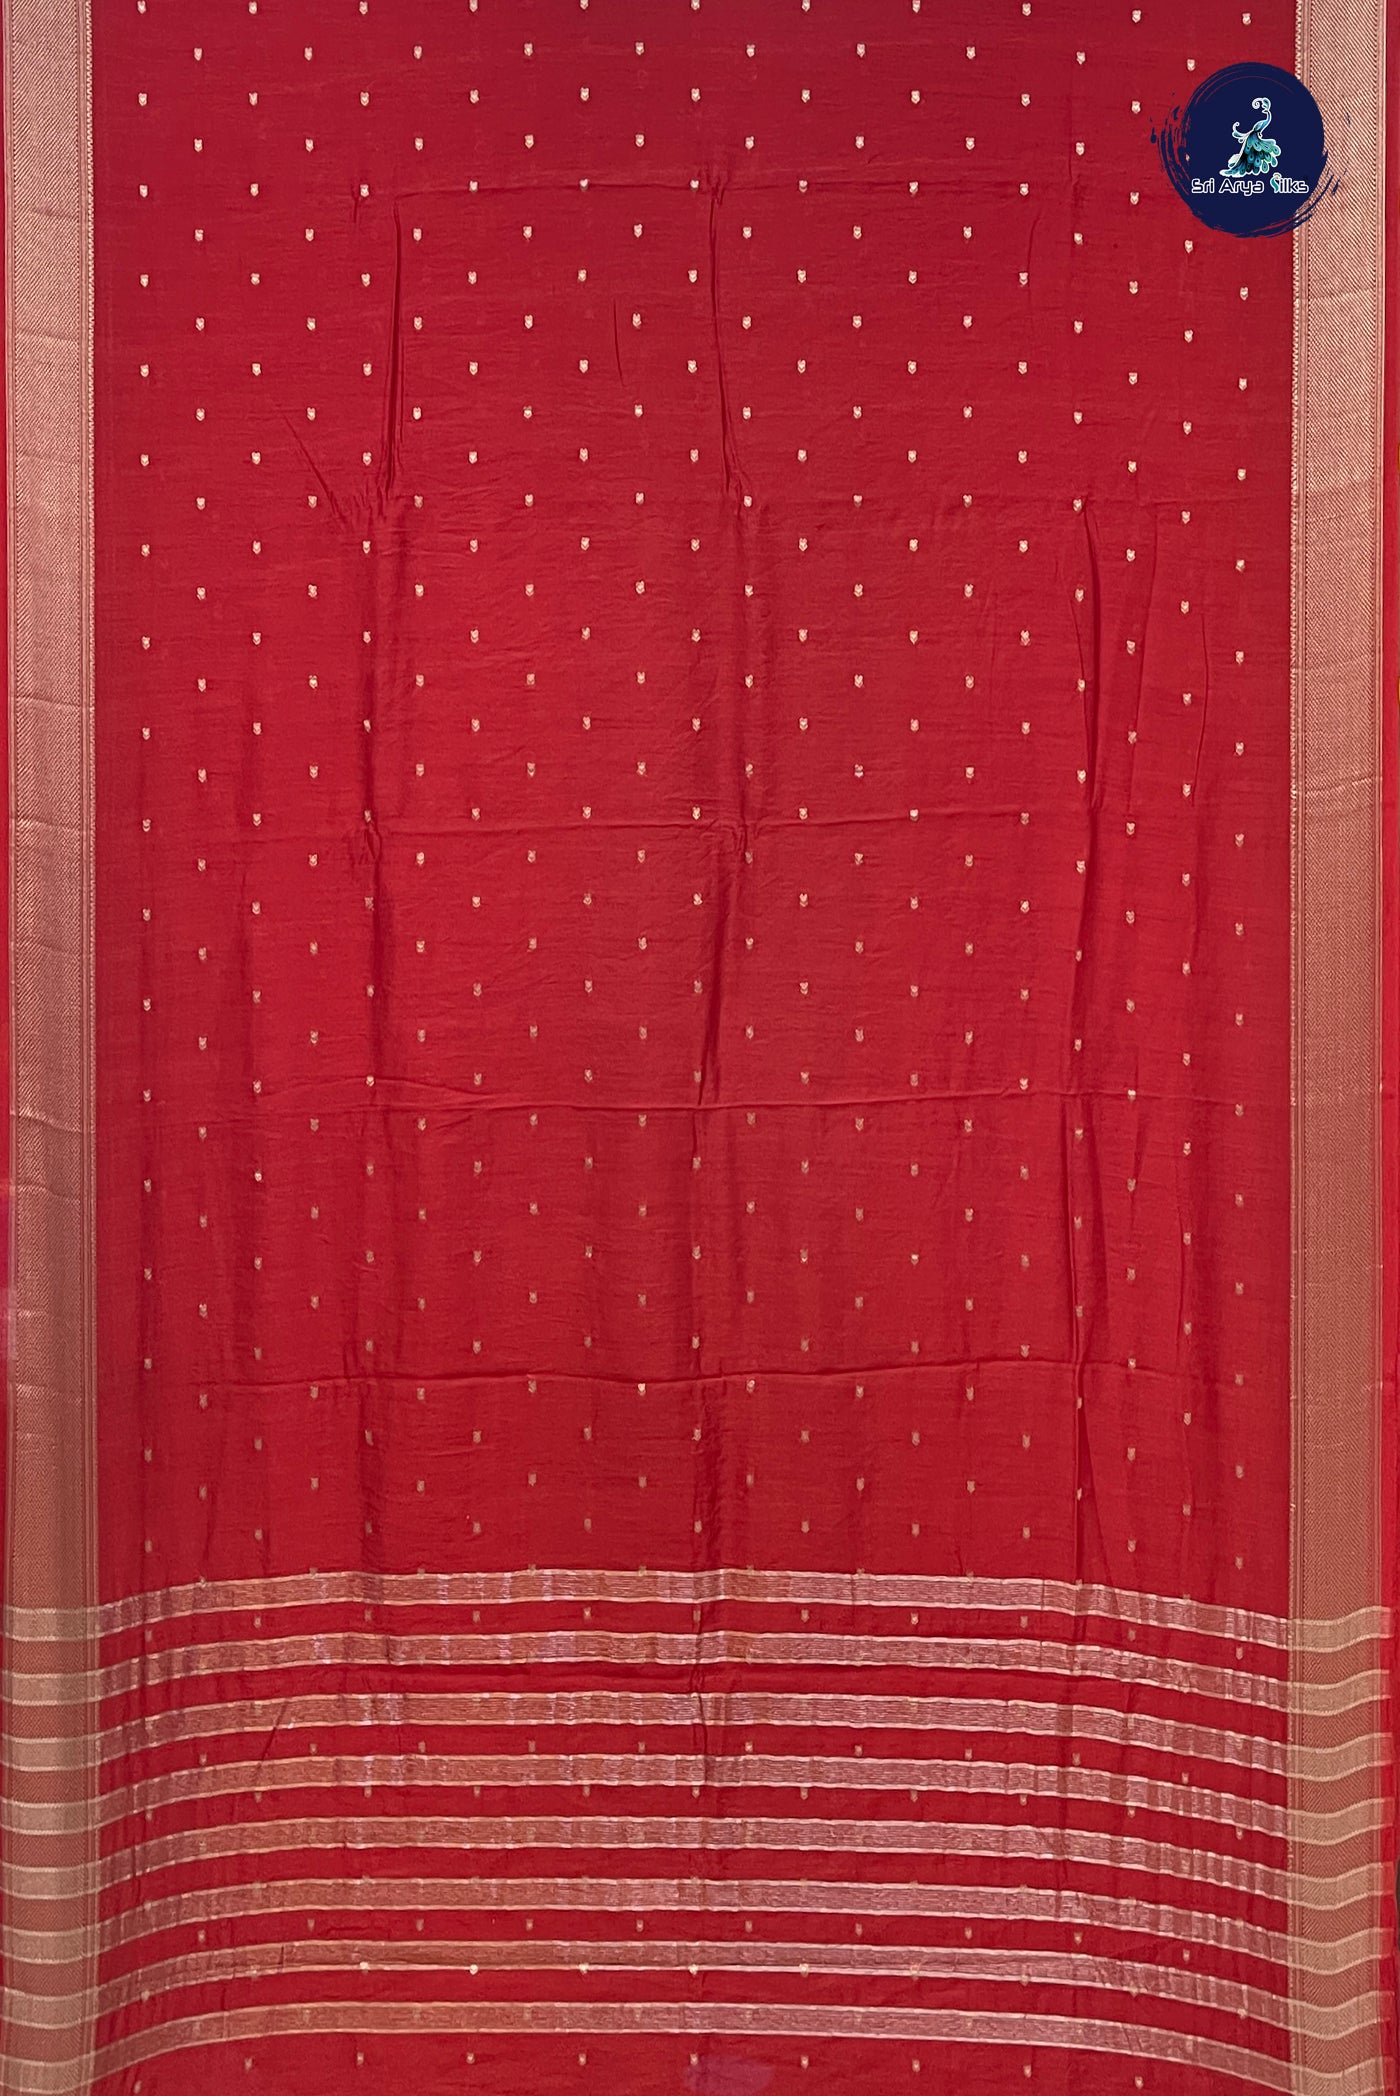 Red Function Wear Saree With Zari Buttas Pattern